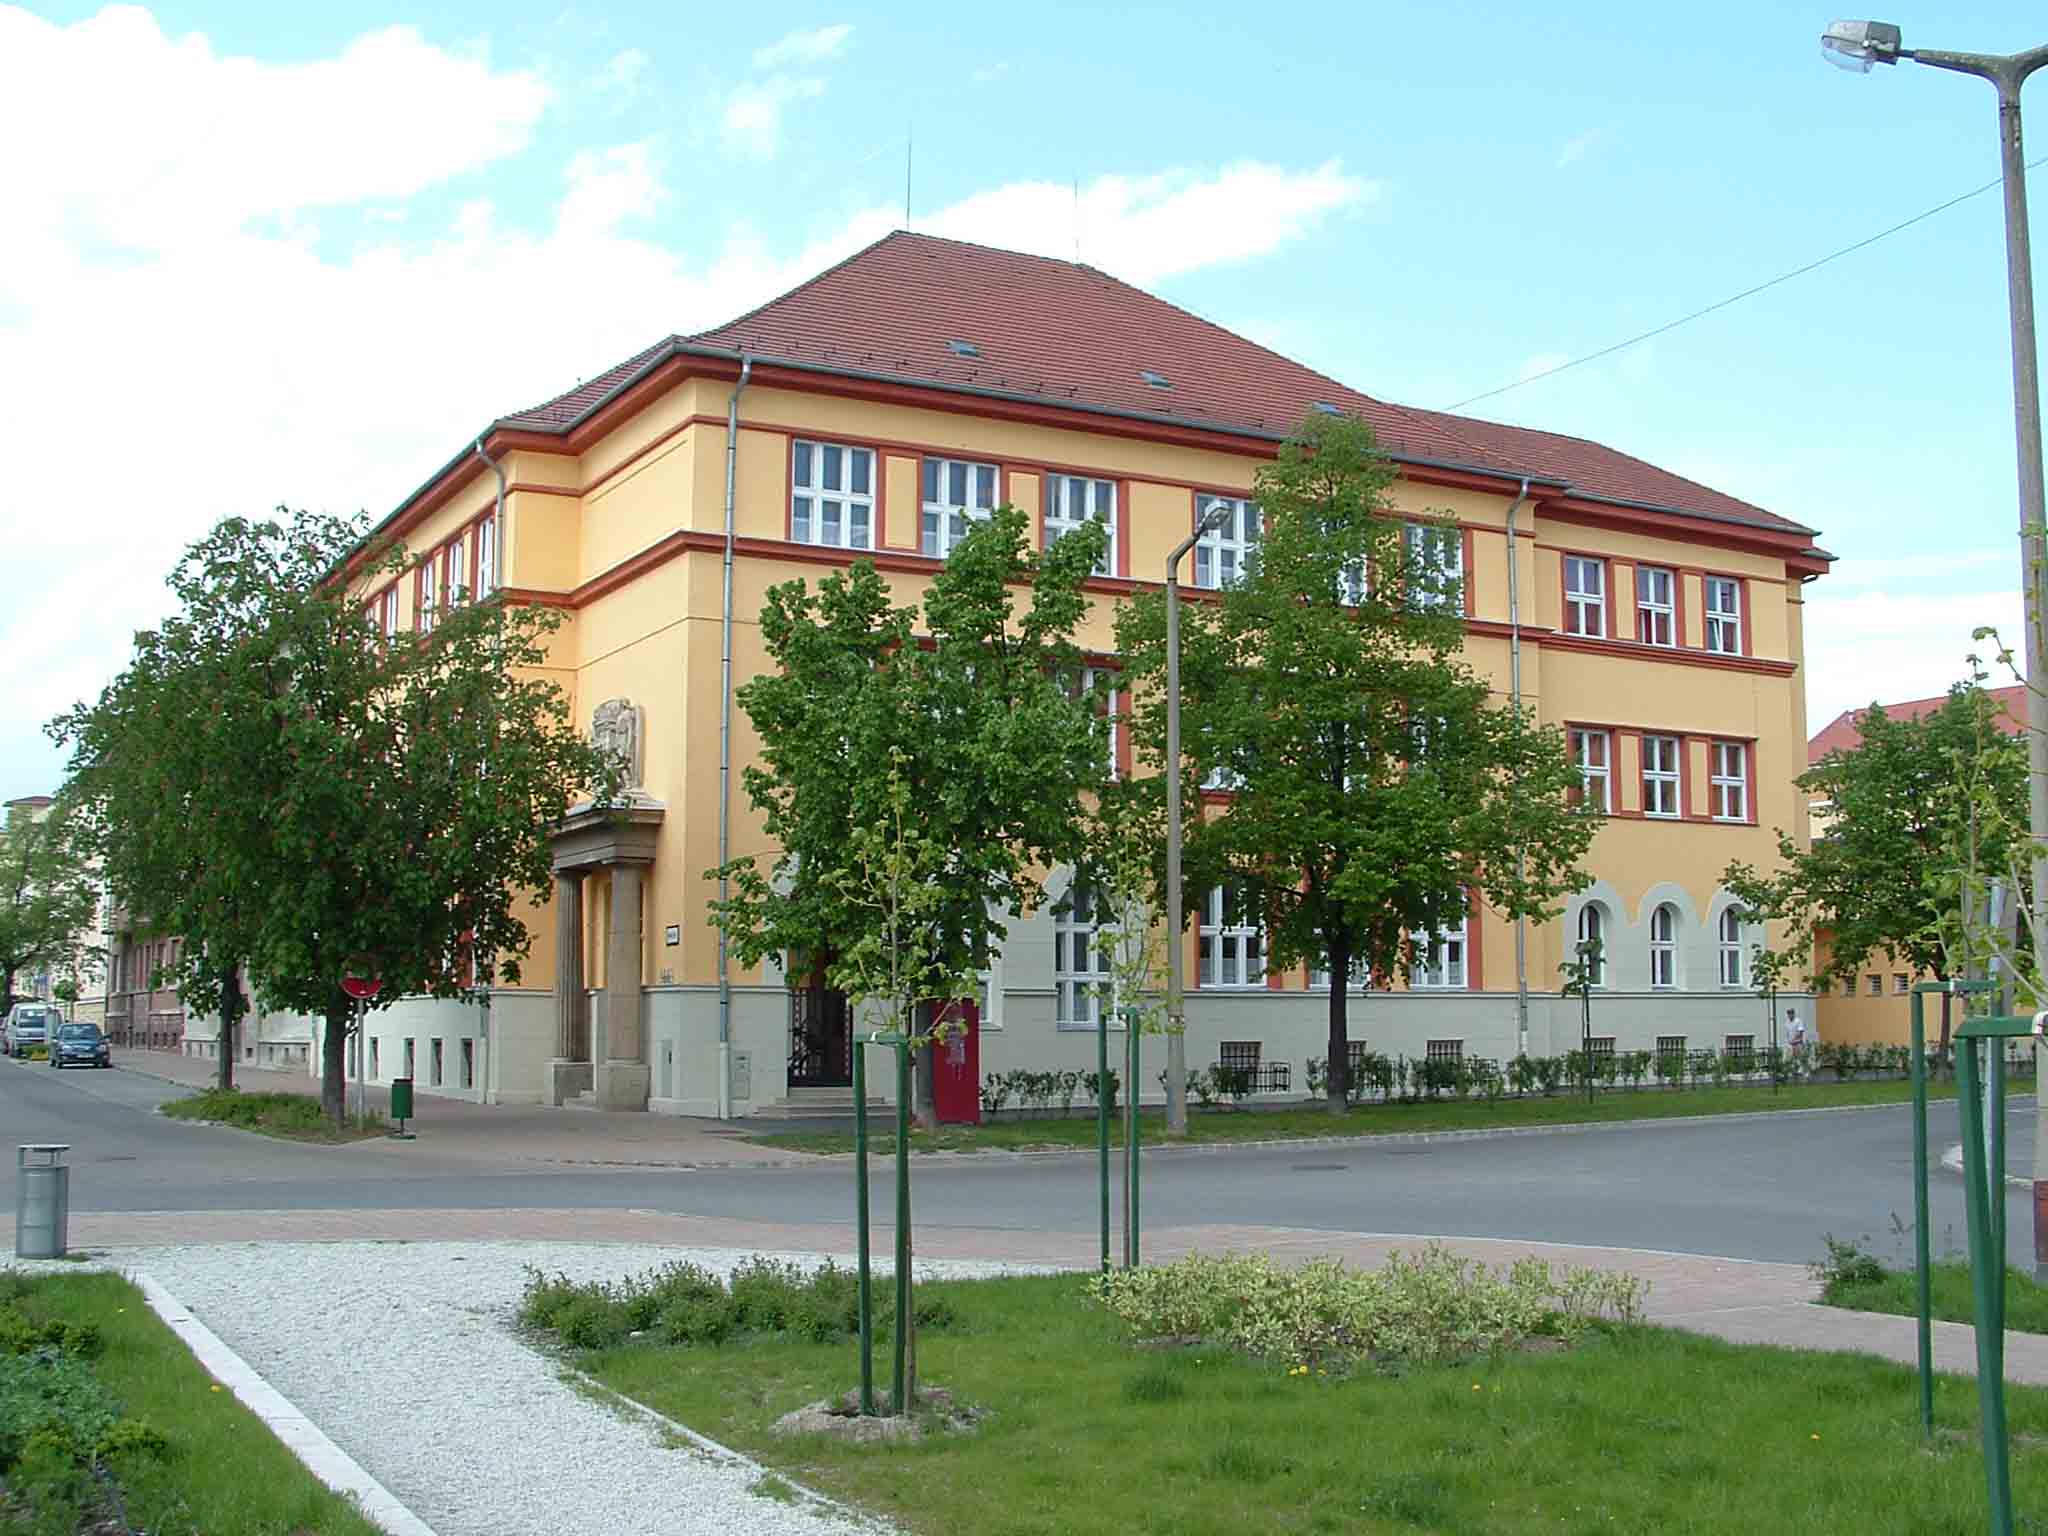 Eötvös József Evangélikus Gimnázium és Egészségügyi Szakközépiskola tetõterének beépítése - Sopron